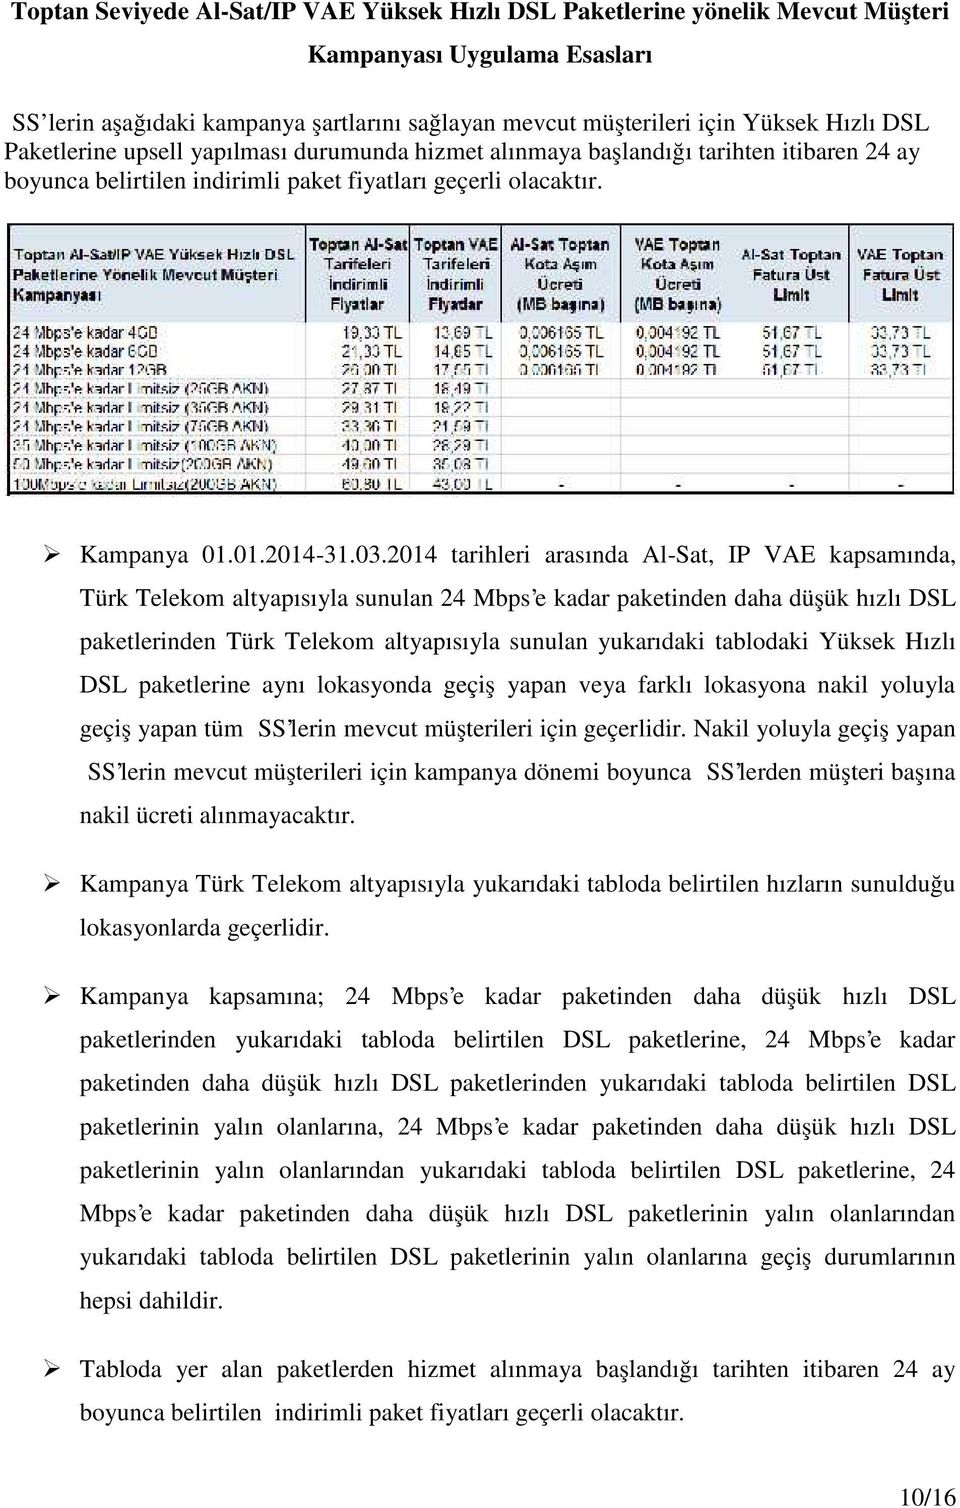 2014 tarihleri arasında Al-Sat, IP VAE kapsamında, Türk Telekom altyapısıyla sunulan 24 Mbps'e kadar paketinden daha düşük hızlı DSL paketlerinden Türk Telekom altyapısıyla sunulan yukarıdaki